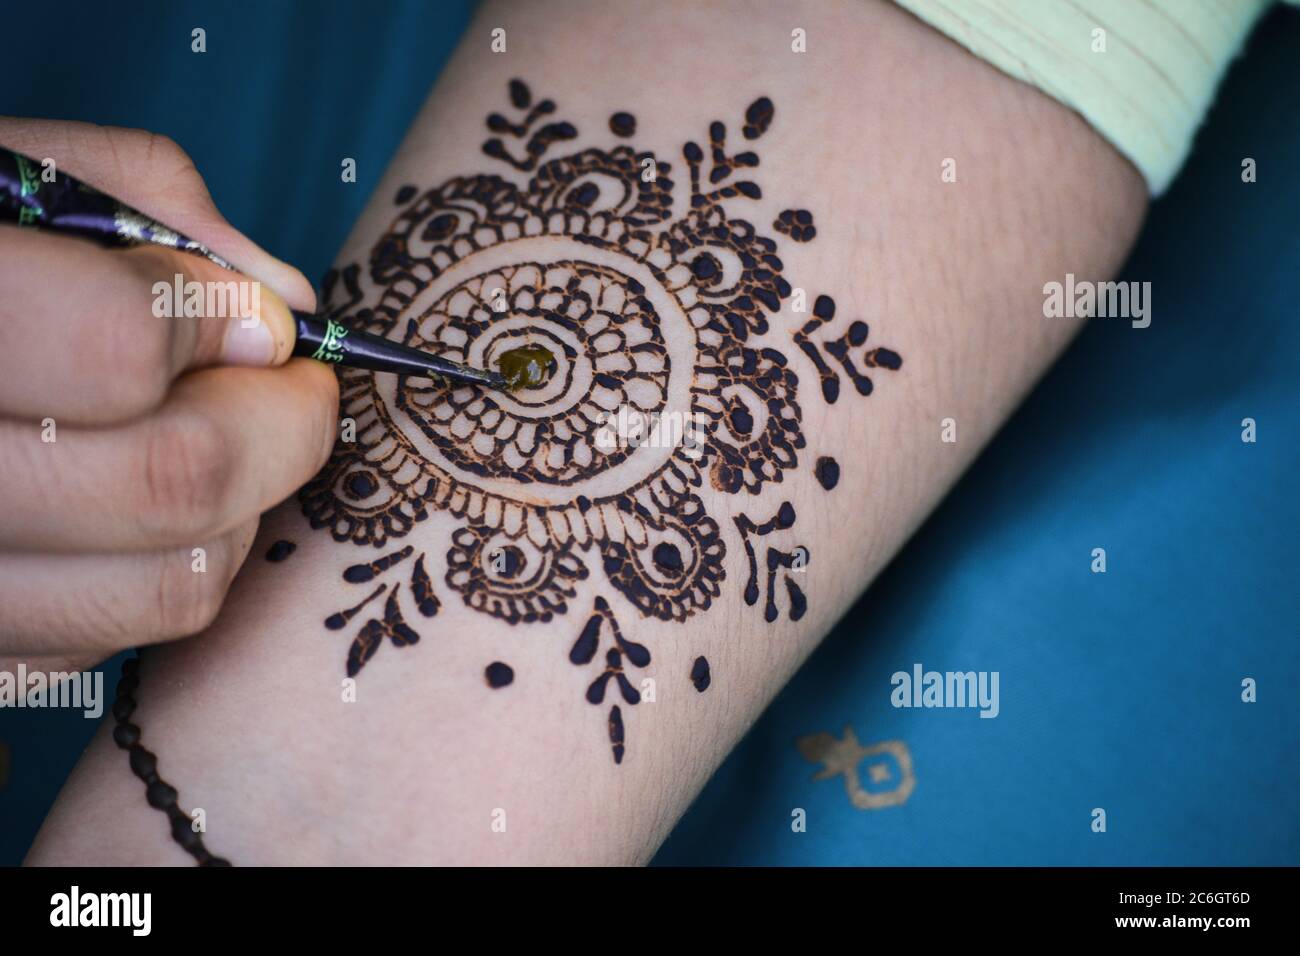 टैटू की तरह लगाना चाहती हैं मेहंदी तो इन डिजाइंस पर एक नजर जरूर डालें |  easy designs of tattoo style mehndi | HerZindagi